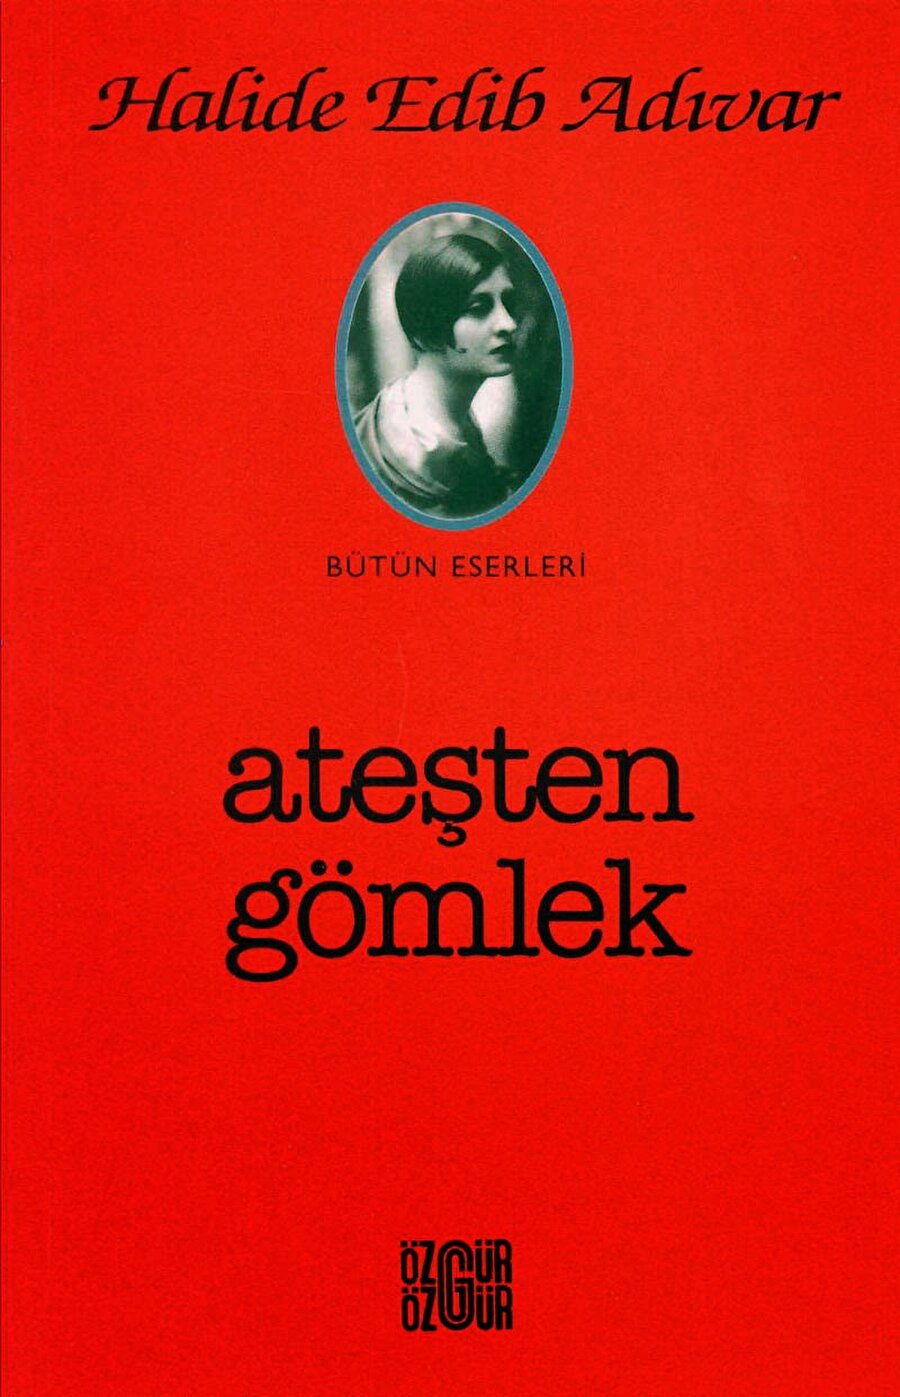 Ateşten Gömlek
Ateşten Gömlek, Halide Edip Adıvar'ın kaleme aldığı bir eserdir. Eser, Türk edebiyatında Kurtuluş Savaşı'nın anlatıldığı ilk kitap olma özelliğini taşır.